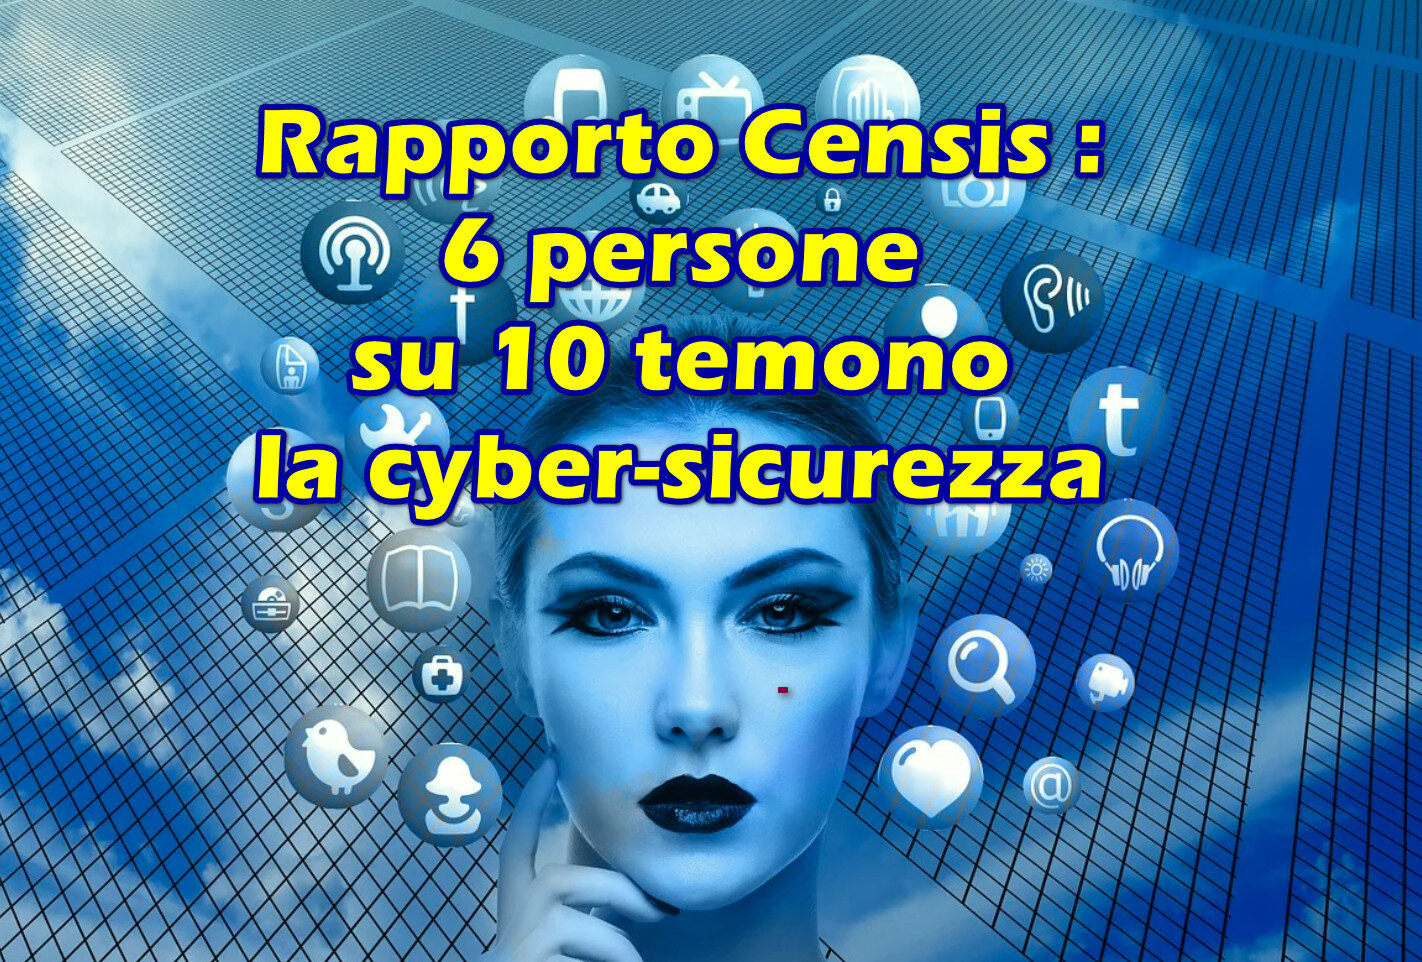 Rapporto Censis : 6 persone su 10 temono la cyber-sicurezza